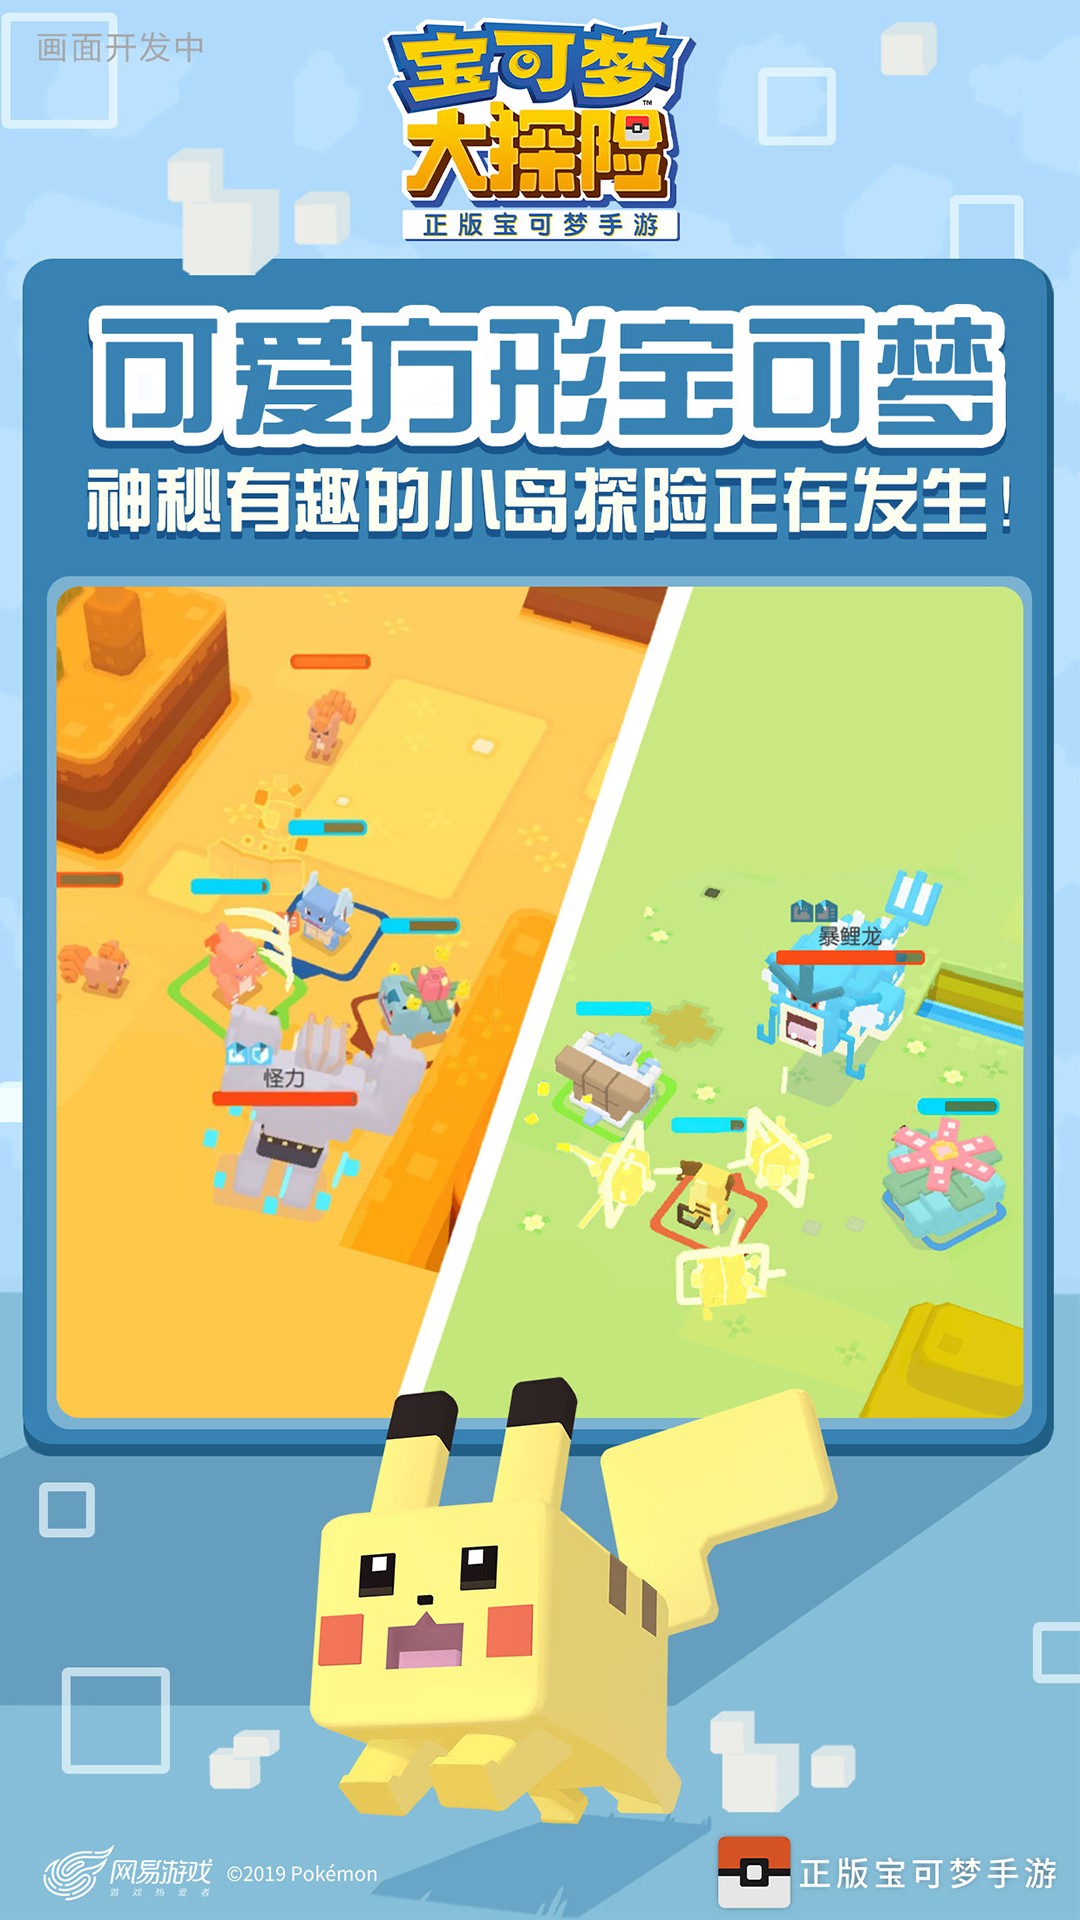 宝可梦大探险app下载 1.0.4 破解版